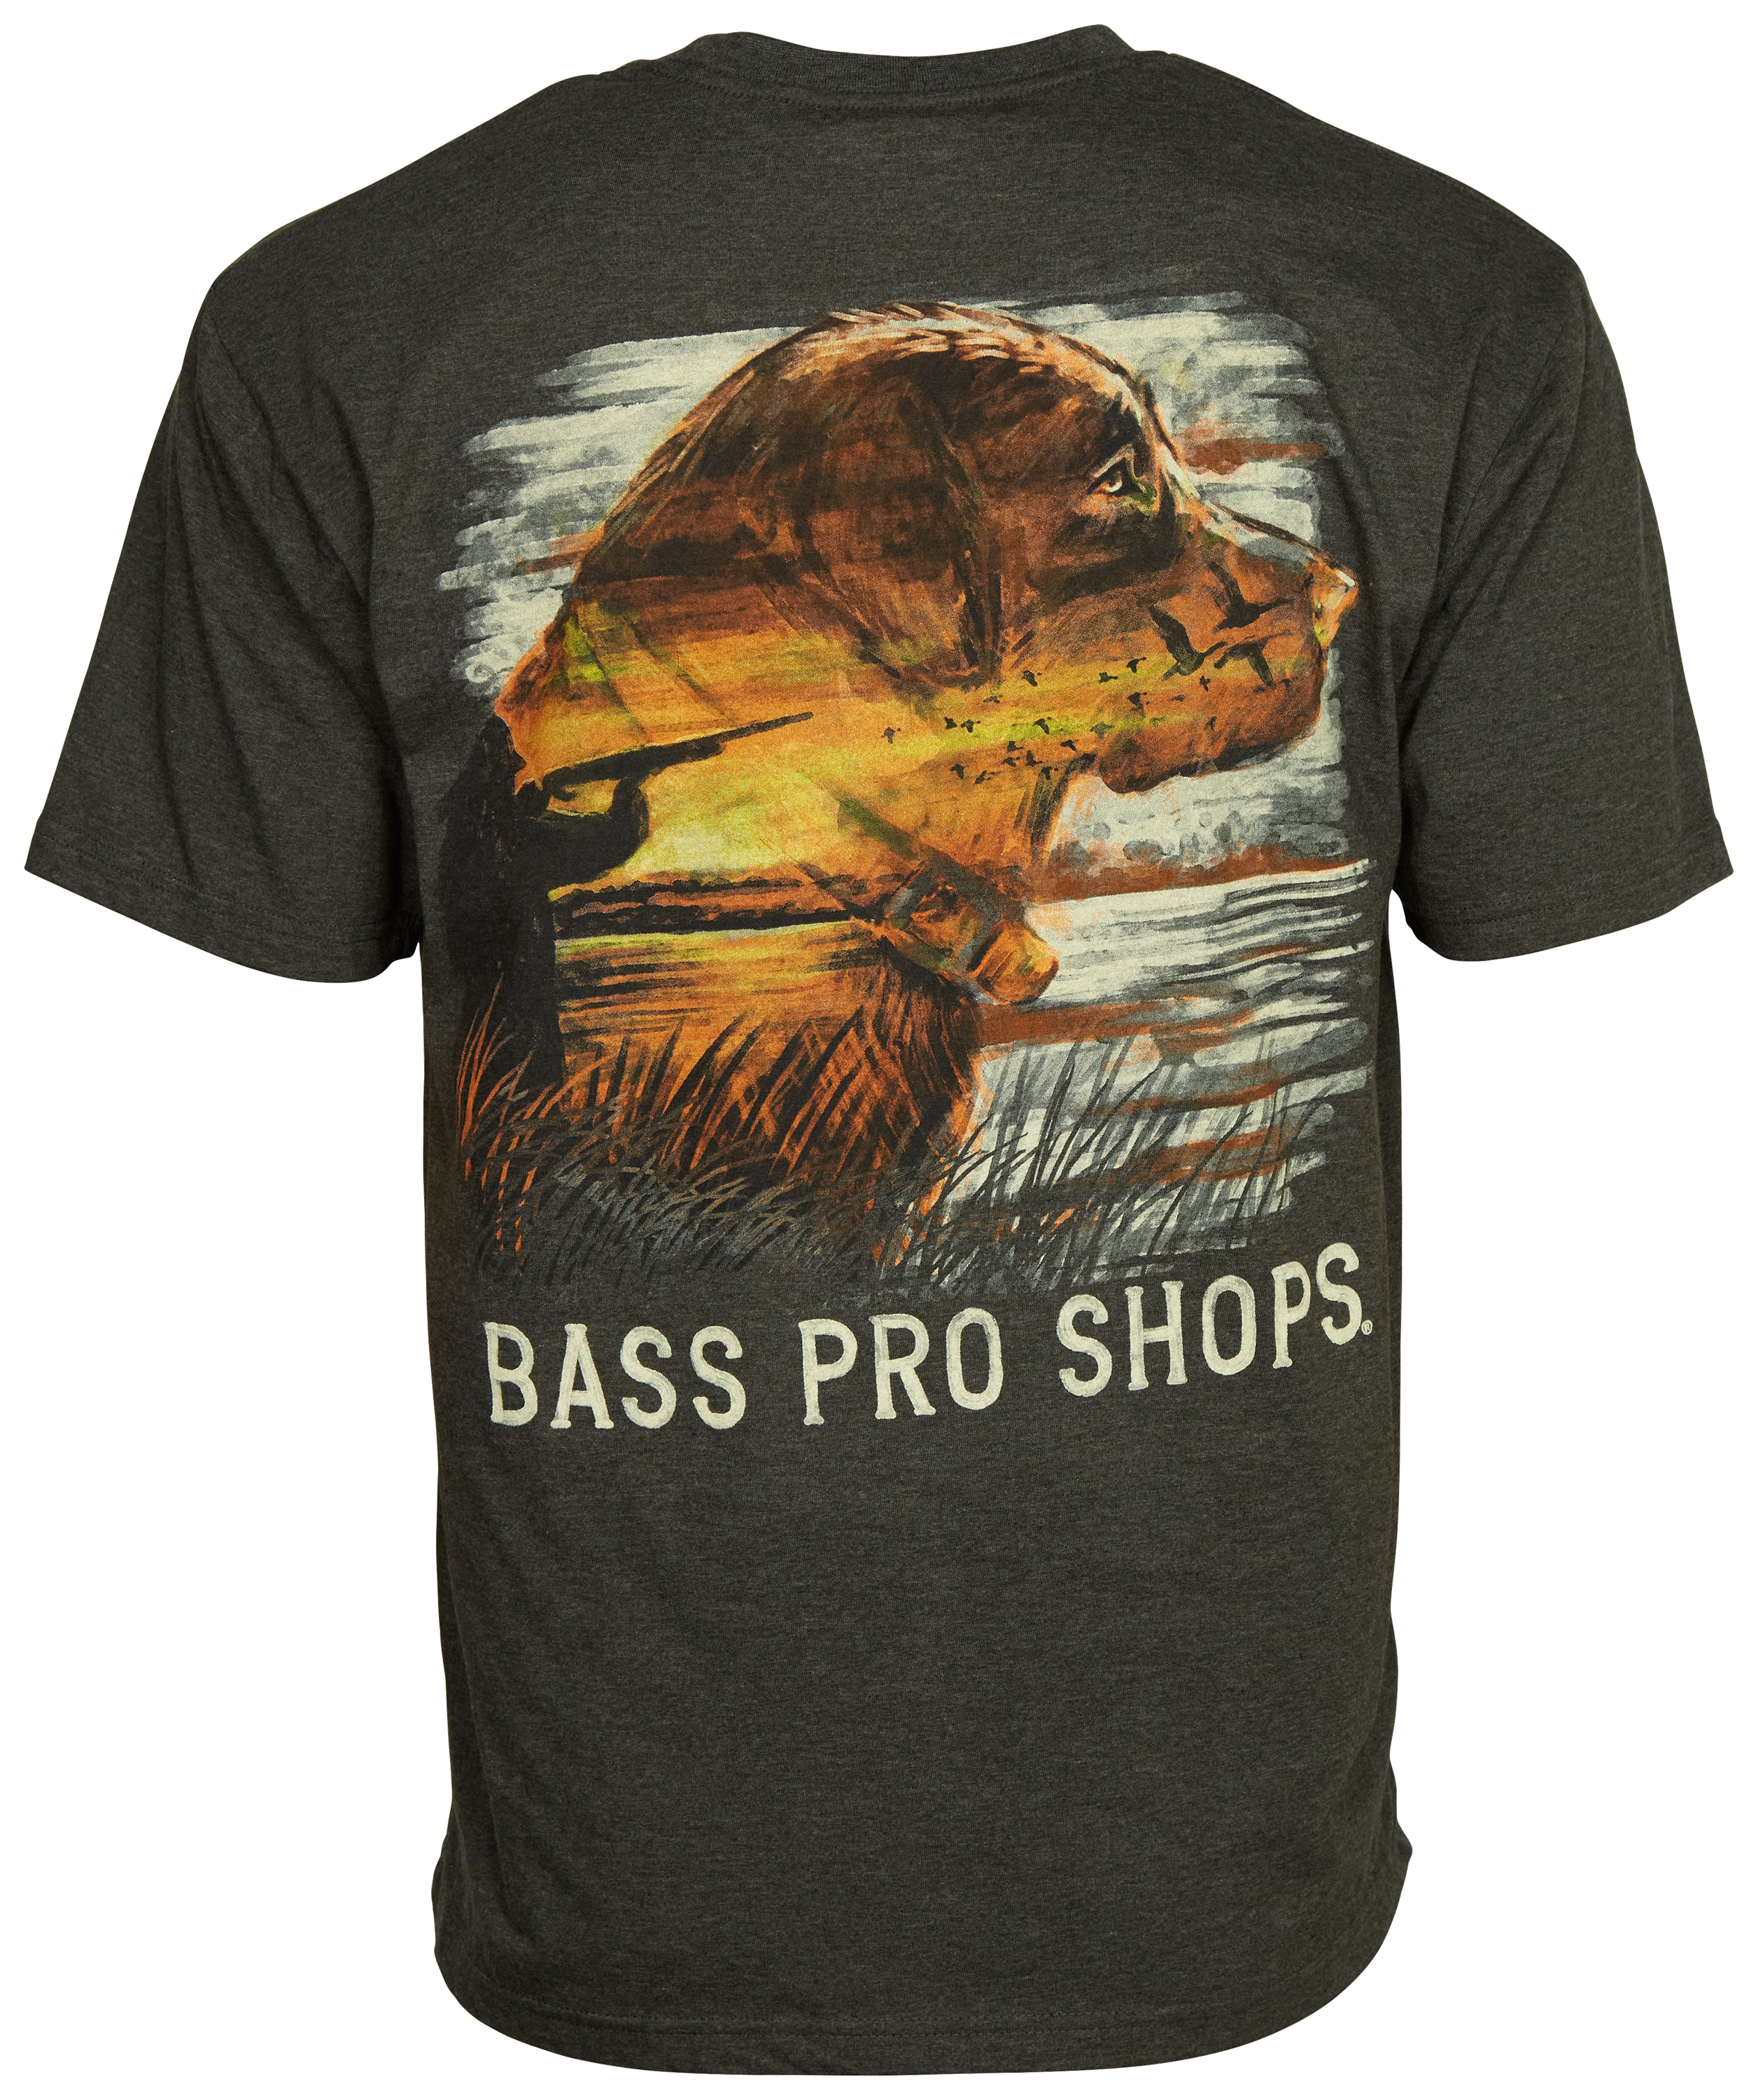  Bass Pro Shop Shirt